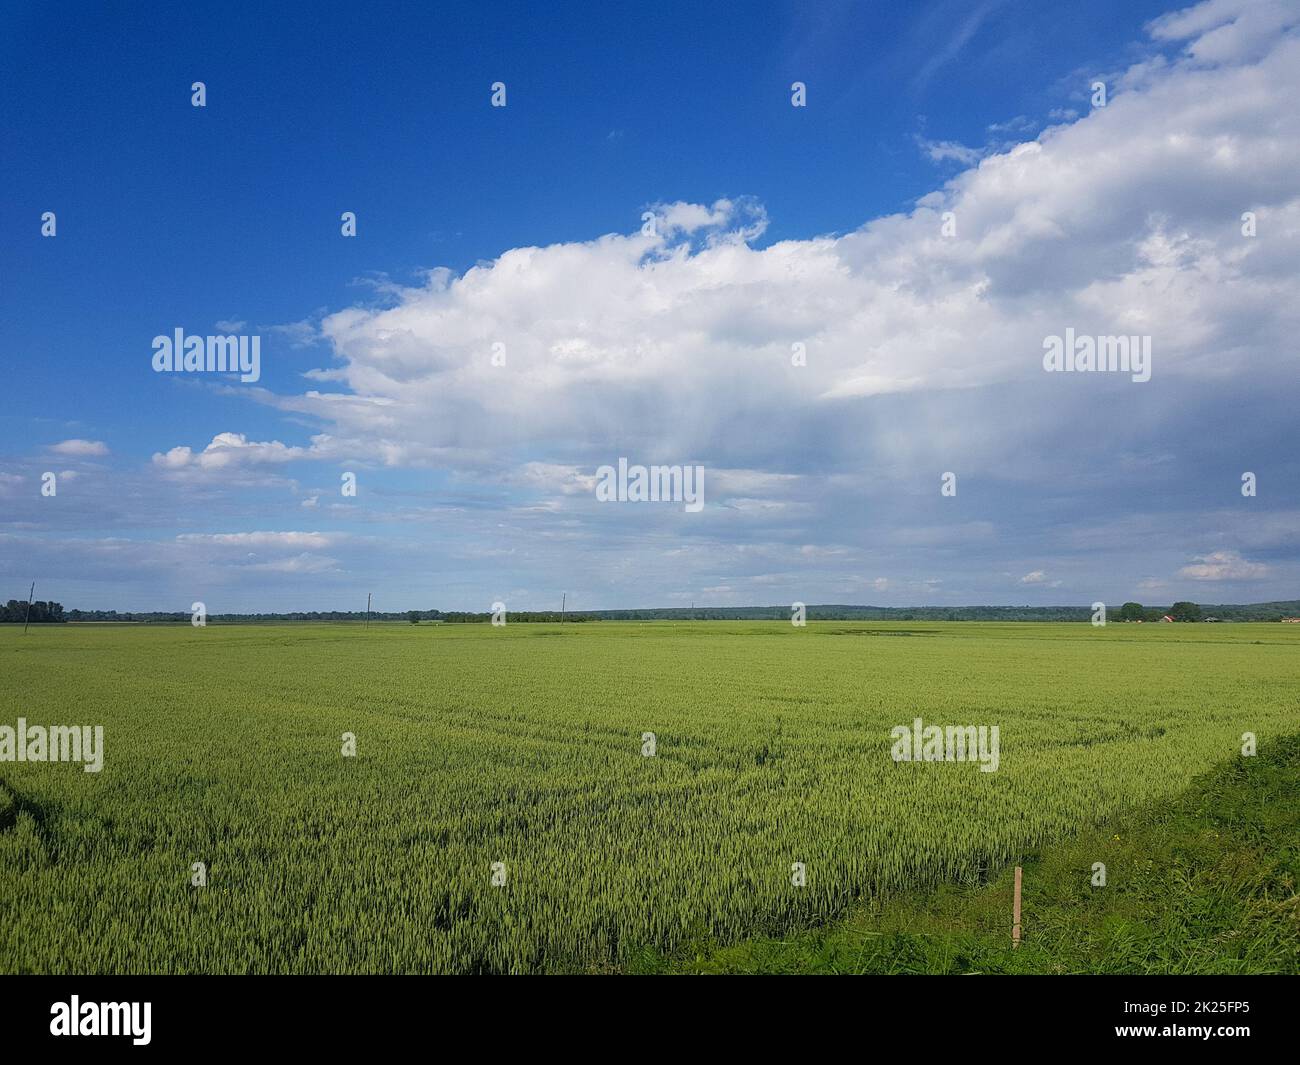 Hermoso paisaje de una tierra verde y verde bajo un nublado cielo Foto de stock